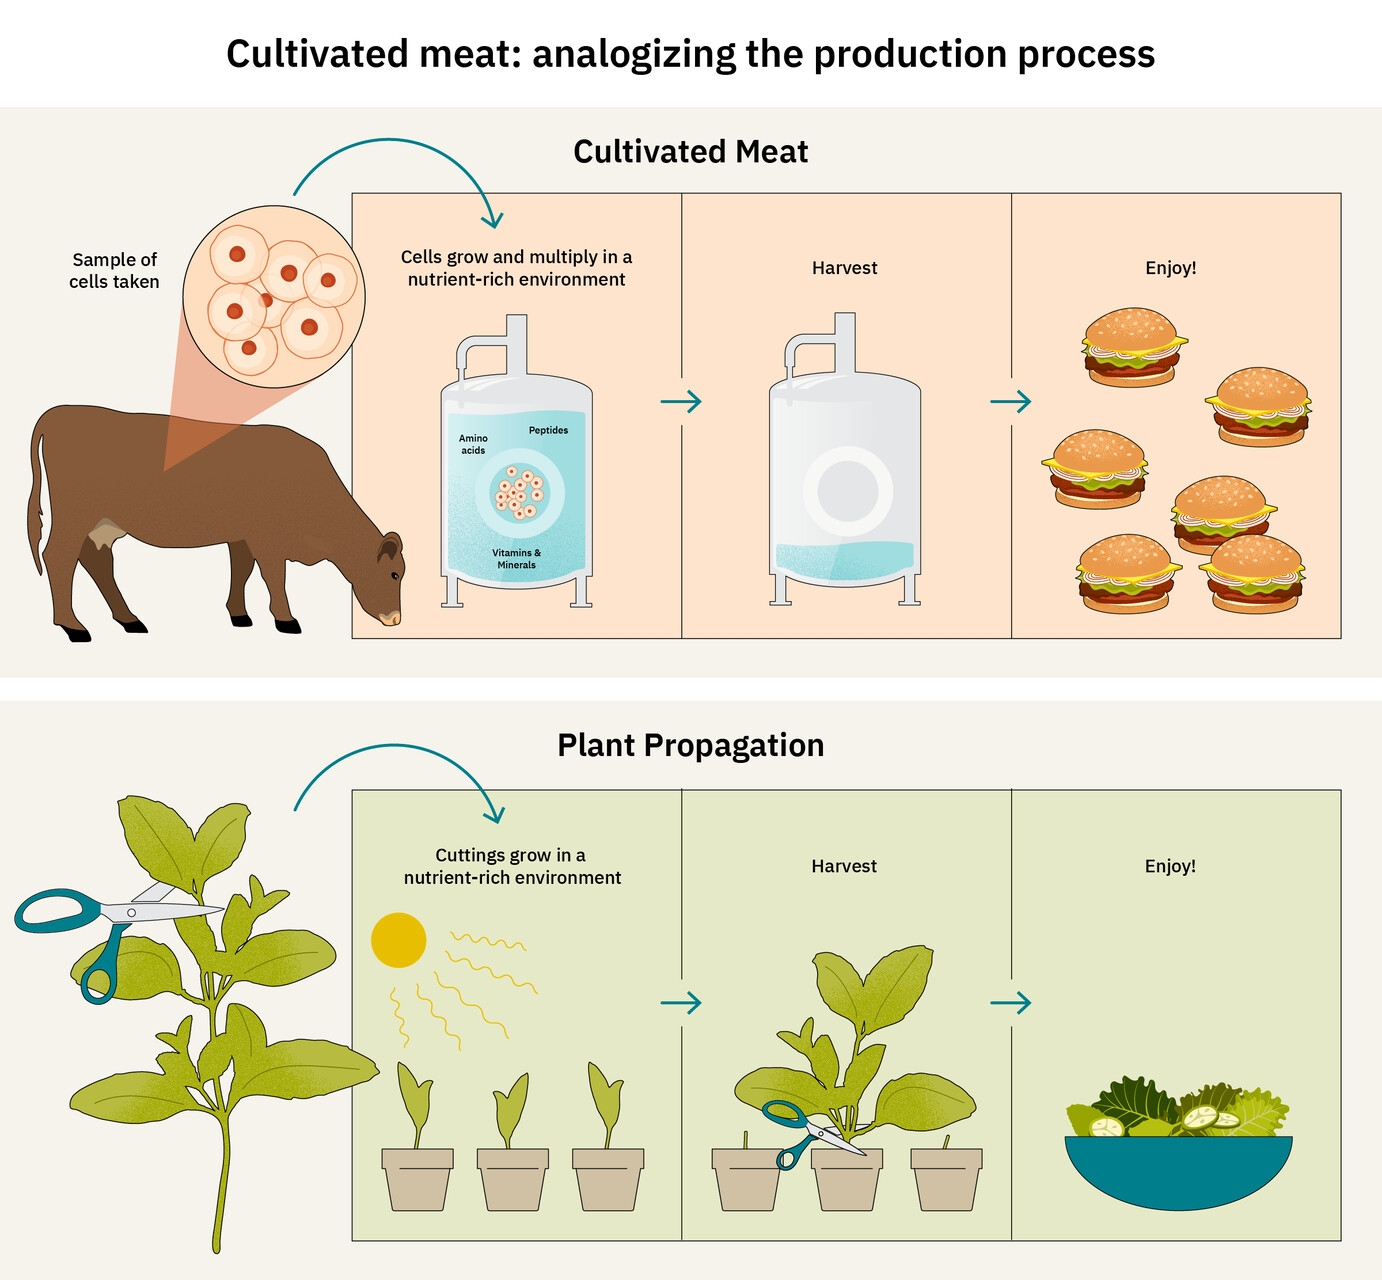 संवर्धित मांस: बढ़ते मांस और पौधों के बीच समानता पर द गुड फूड इंस्टीट्यूट यूरोप का एक इन्फोग्राफिक